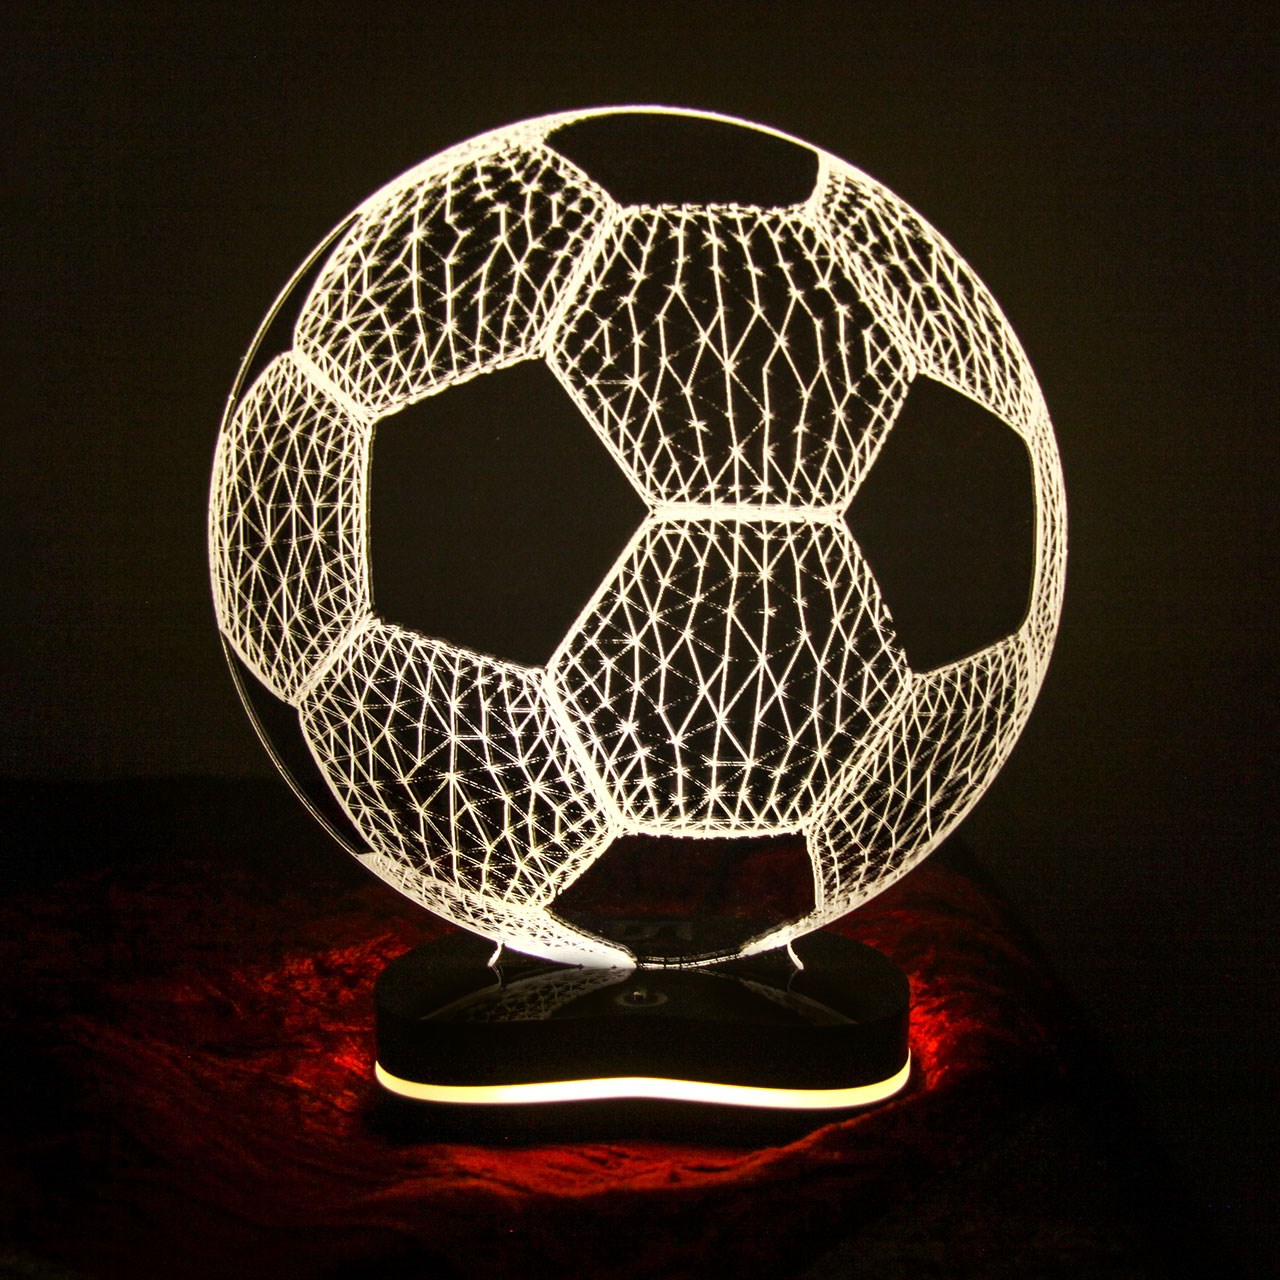 چراغ خواب سه بعدی گالری دکوماس طرح توپ فوتبال کد DMS107